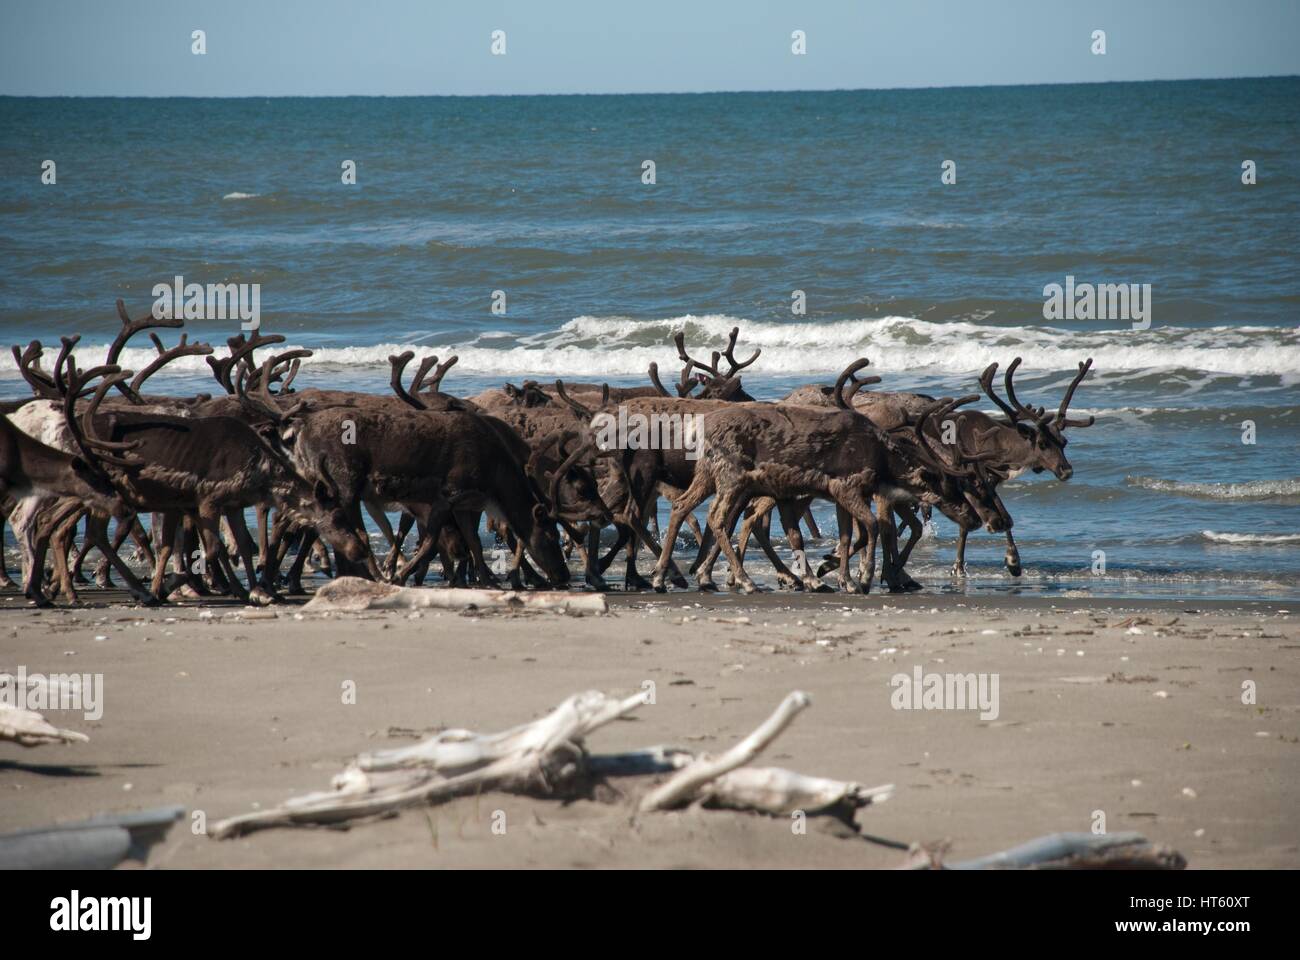 Eine Rentierherde sammelt Ikpek Strand entlang in die Bering Land Bridge National Preserve, Alaska. Rentier der Region in der Zeit um 1900 brachten, schwindende Karibu-Herden für die einheimische Bevölkerung Alaskas Inupiaq zu ersetzen. Stockfoto